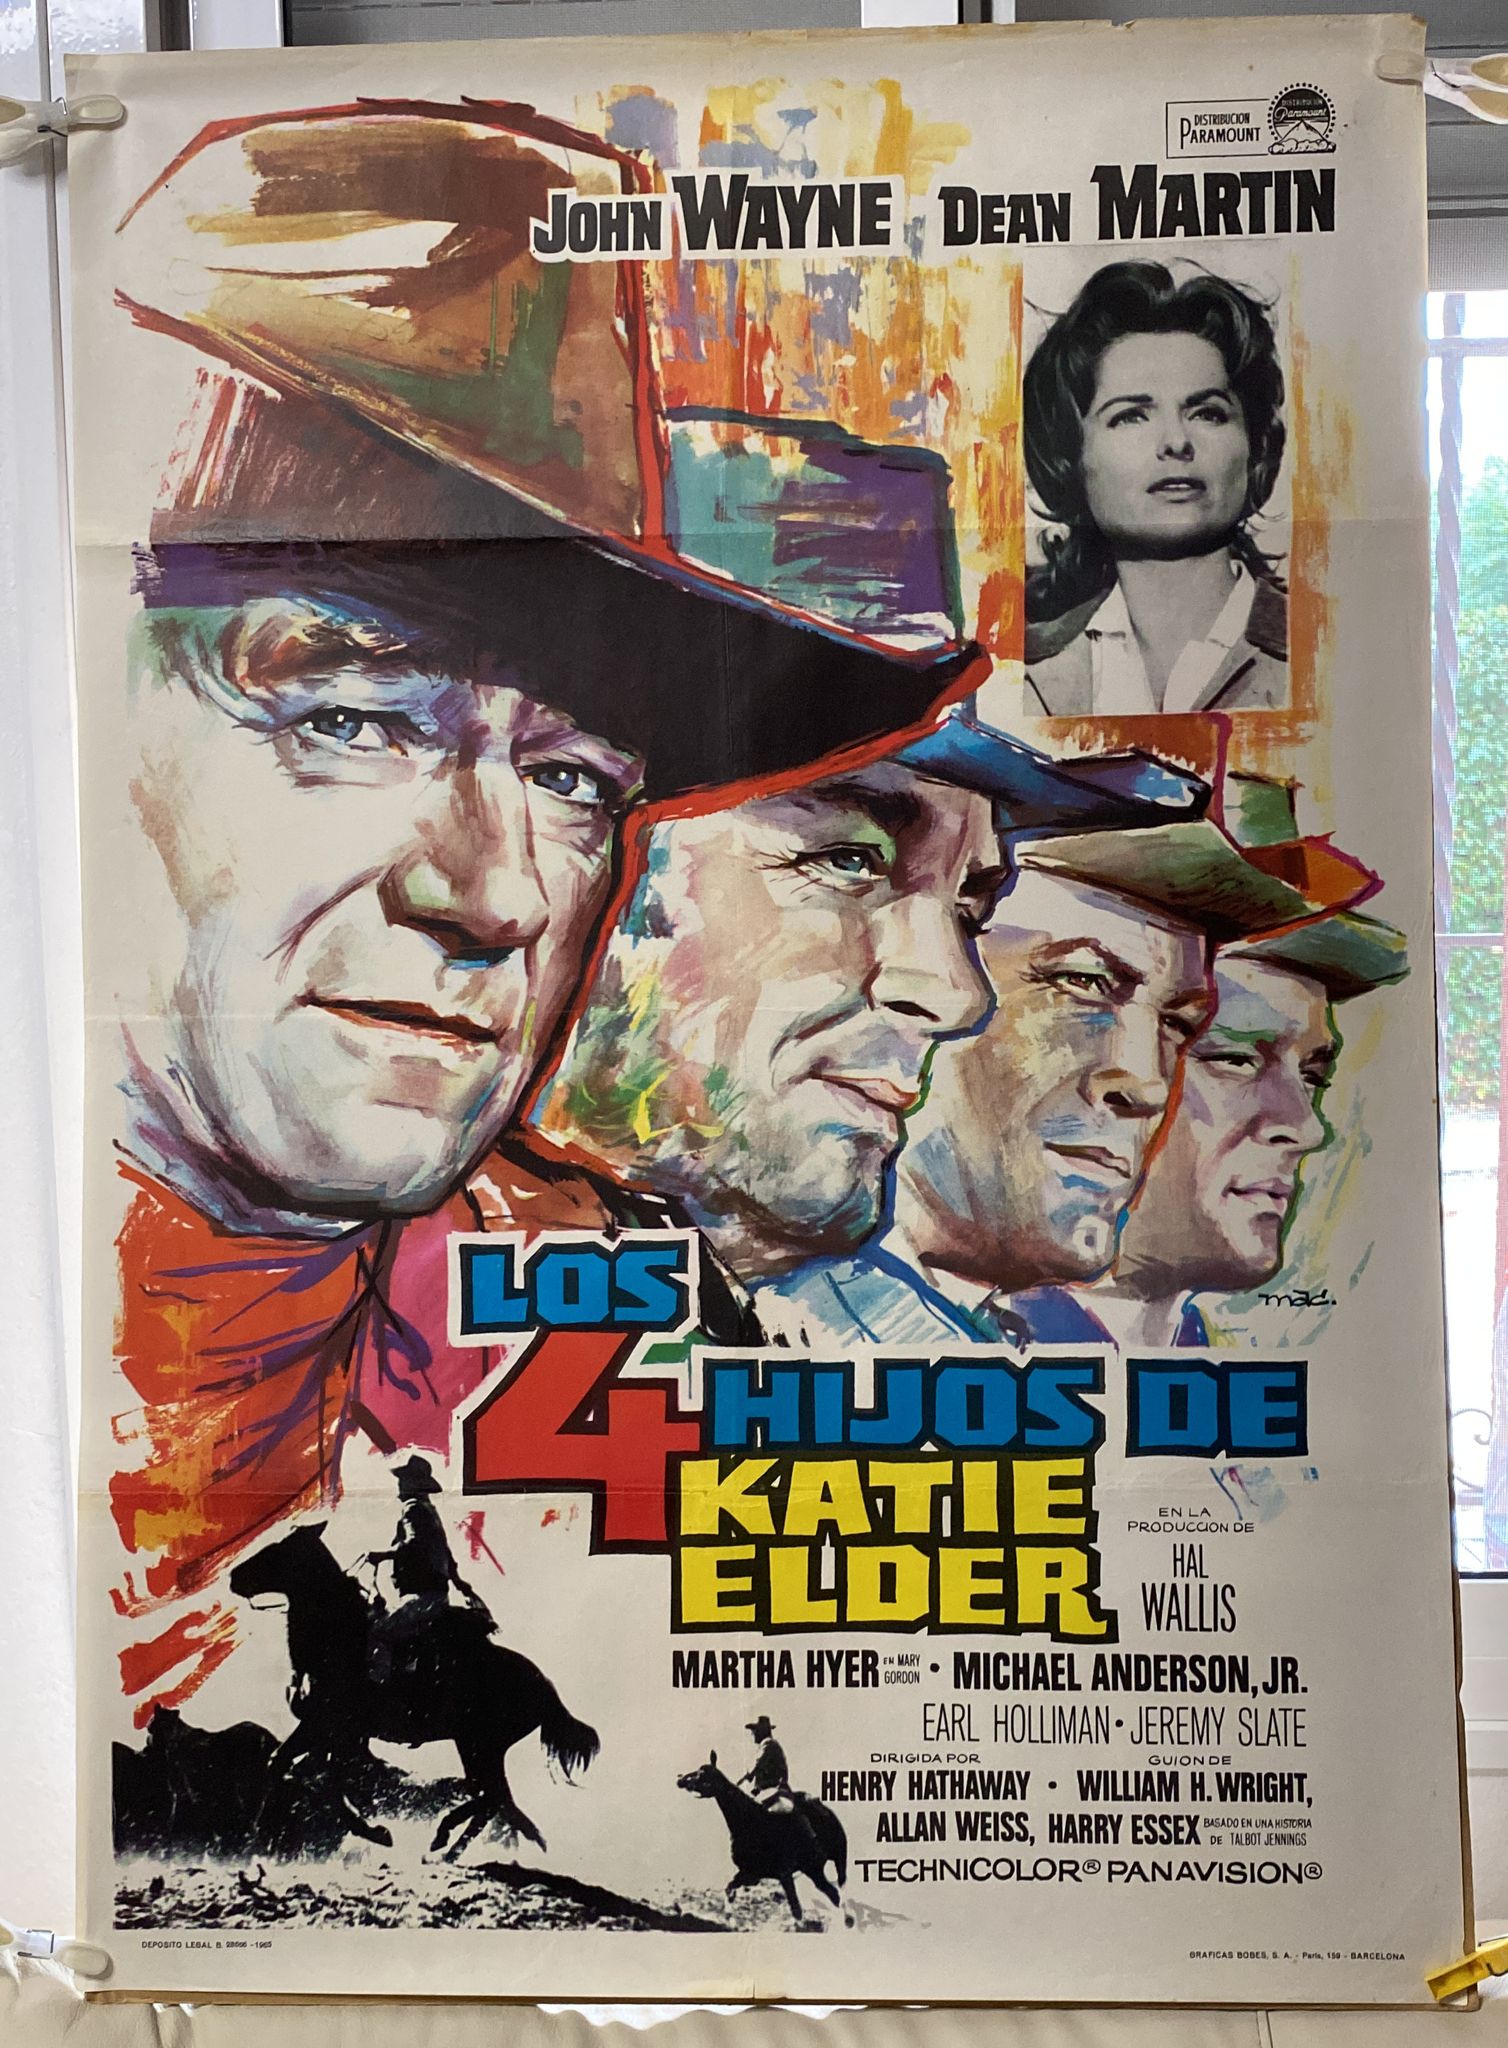 Los 4 Hijos de Katie Elder. Cartel (100x70) de Estreno, 1965